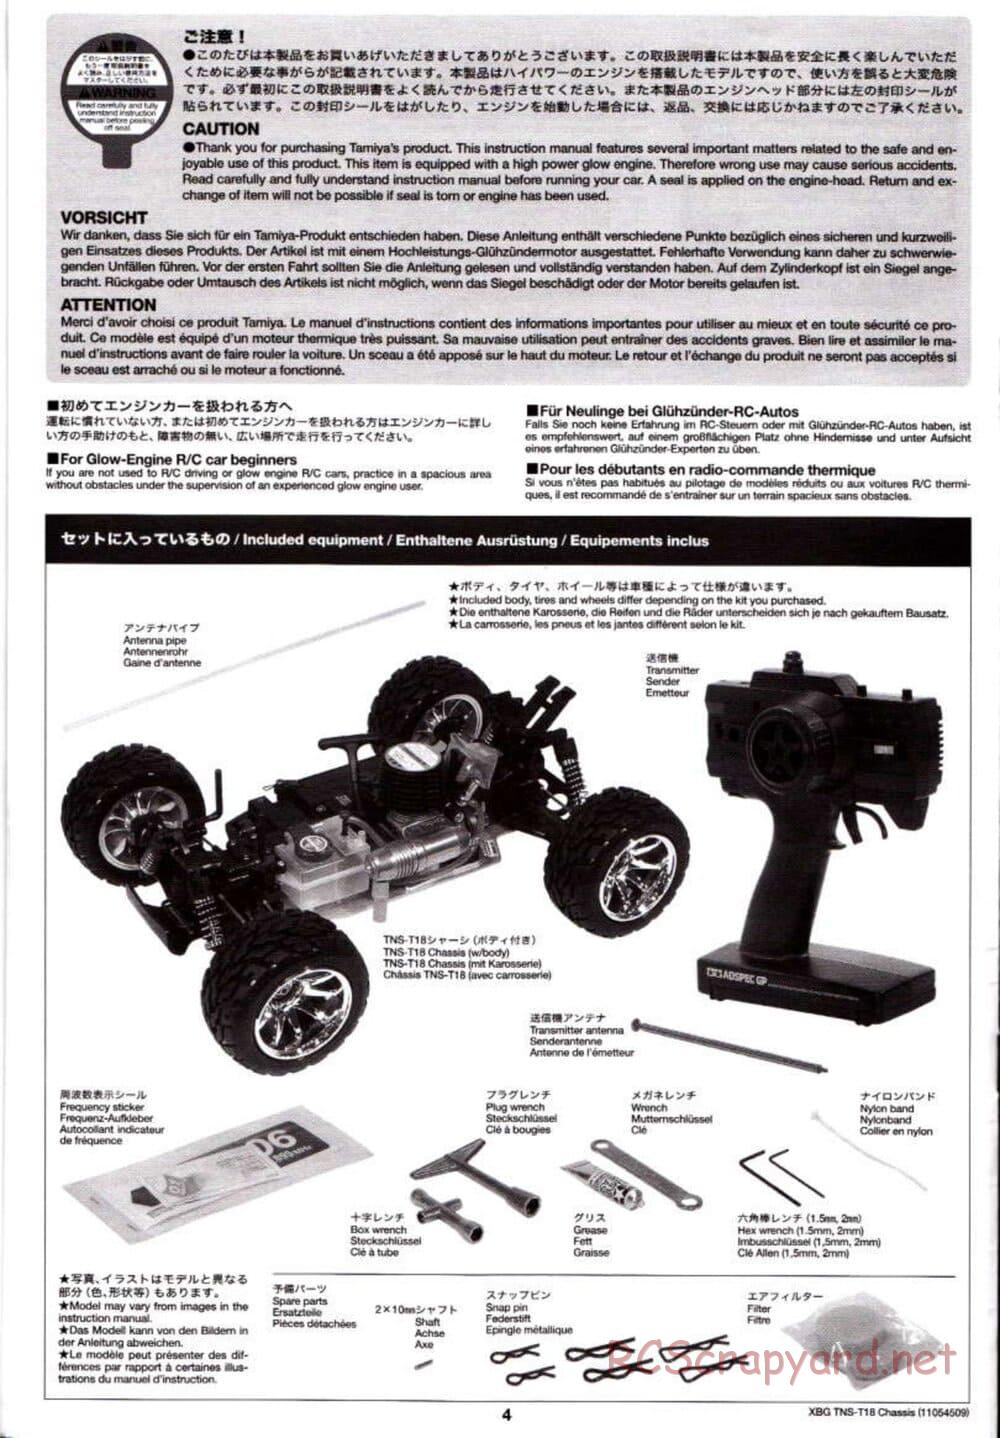 Tamiya - TNS-T18 Chassis - Manual - Page 4